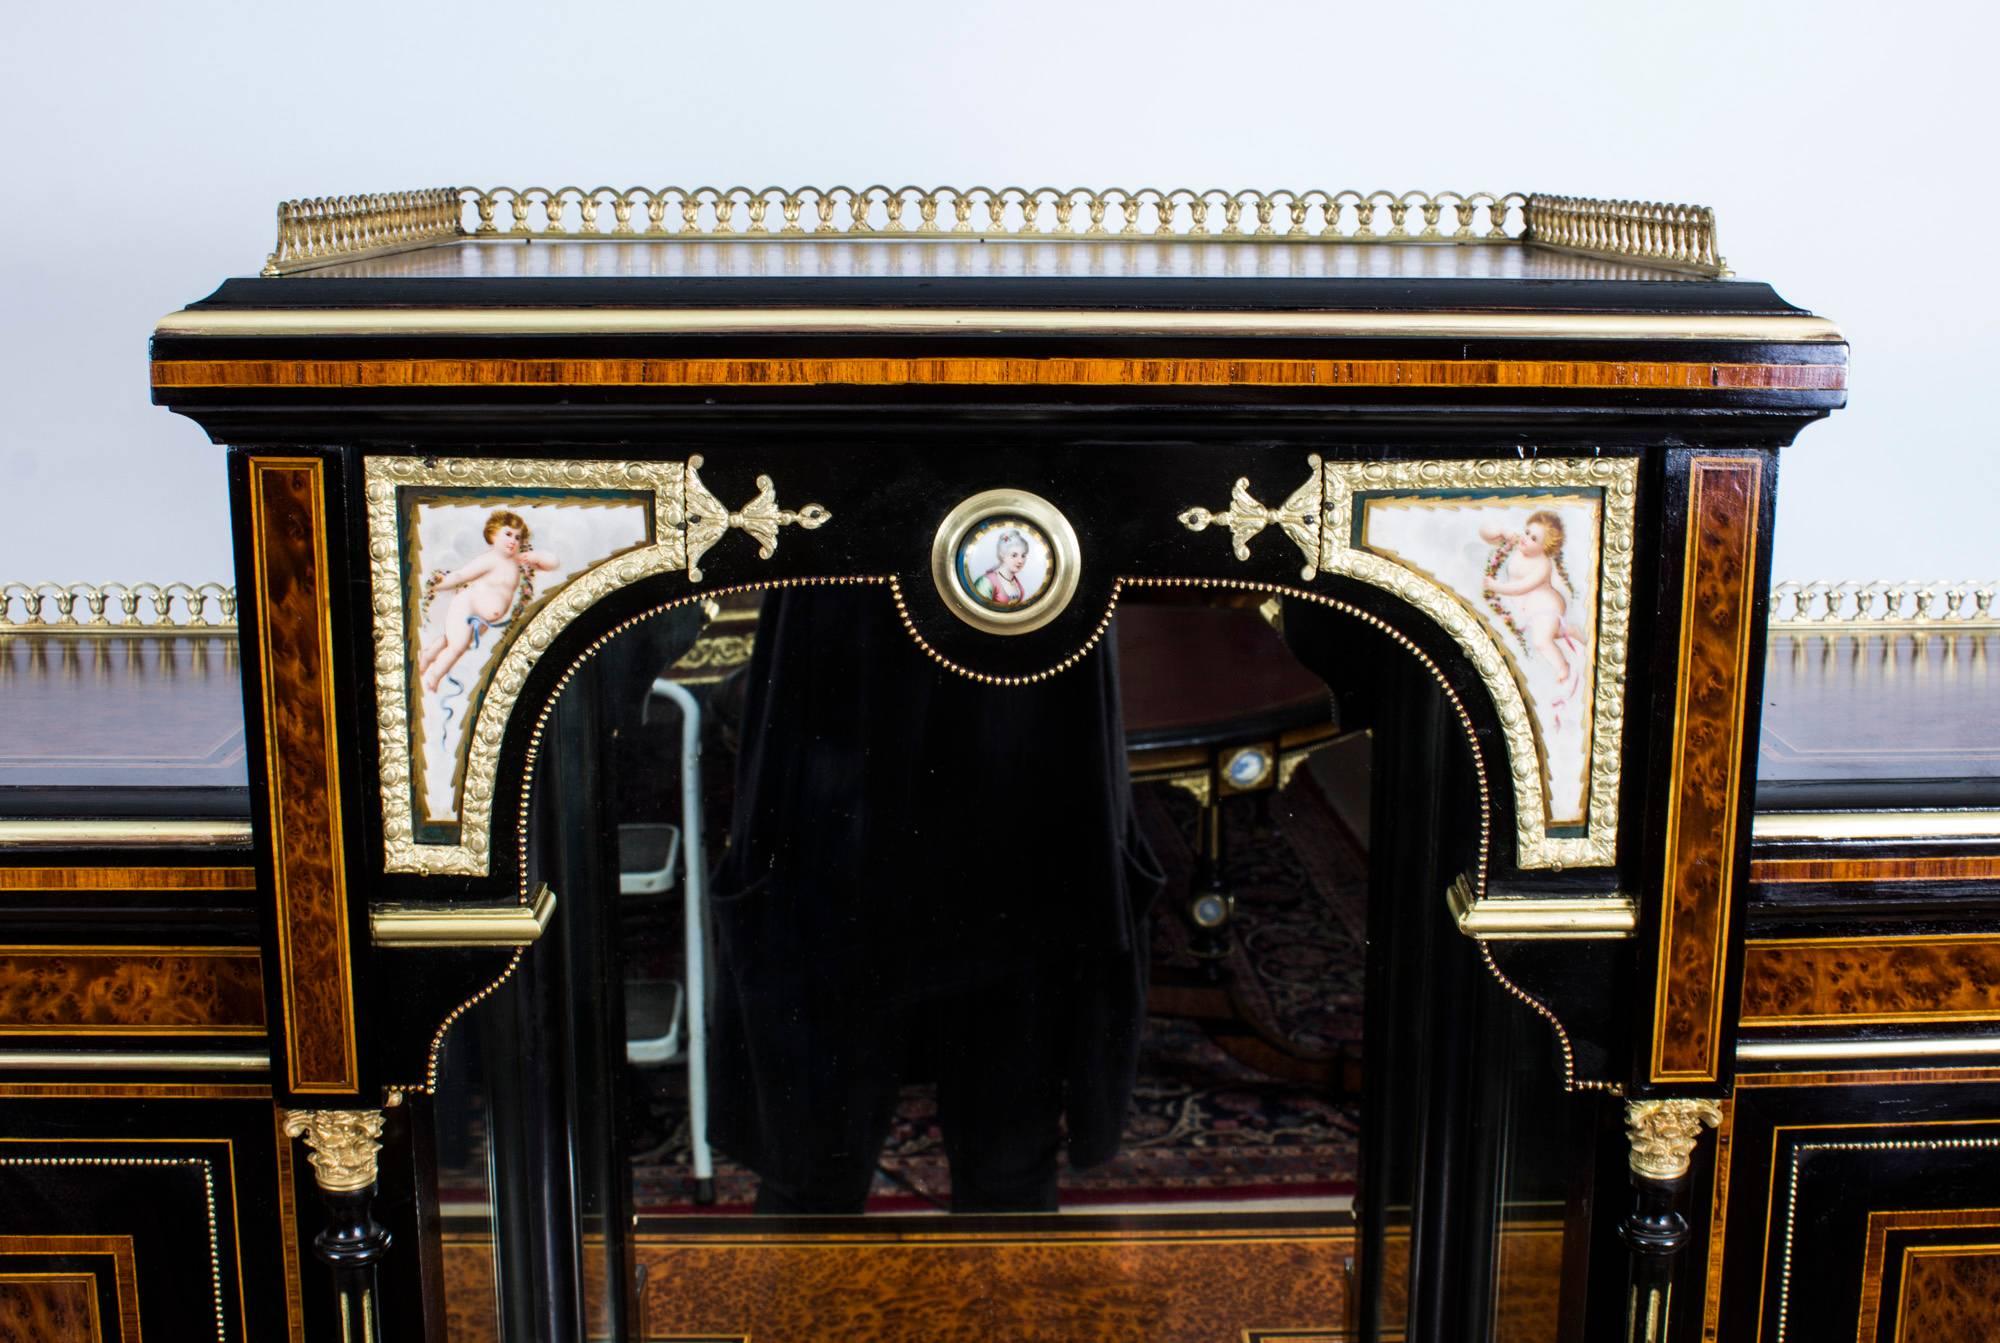 Estimé par nos experts comme datant d'environ 1860, cet ancien Bonheur Du Jour Victorien est un meuble imposant et fonctionnel, si typique de l'époque victorienne.

Nous avons le plaisir de pouvoir proposer à la vente, en excellent état, ce Bonheur